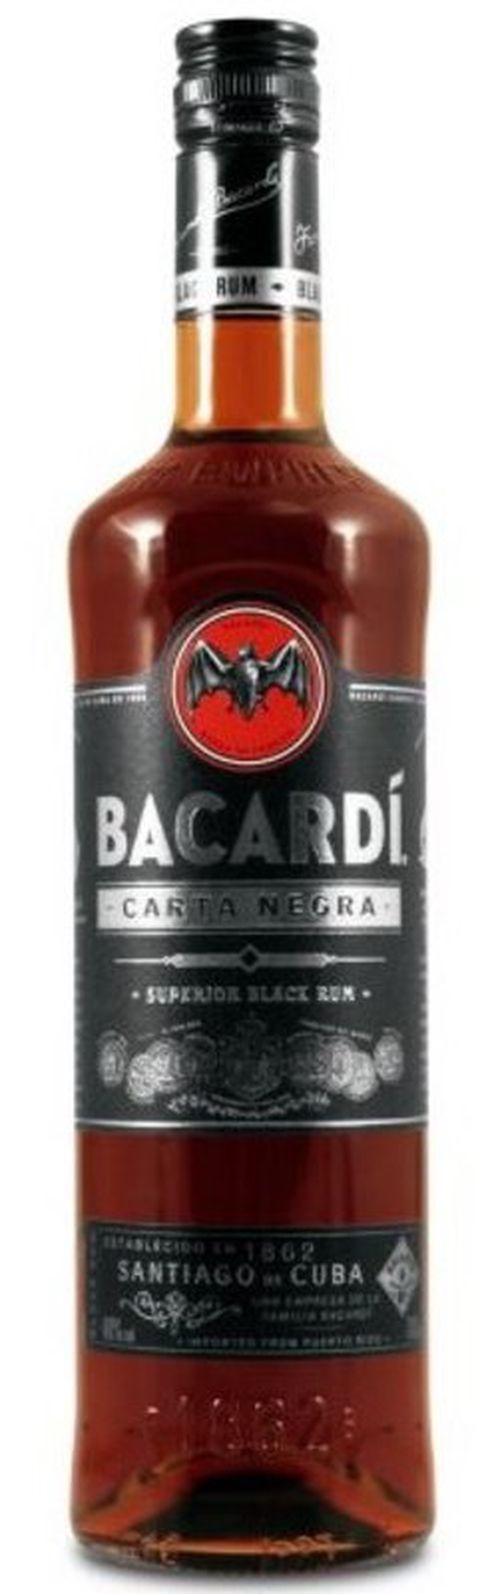 Bacardi Carta Negra 0,7l